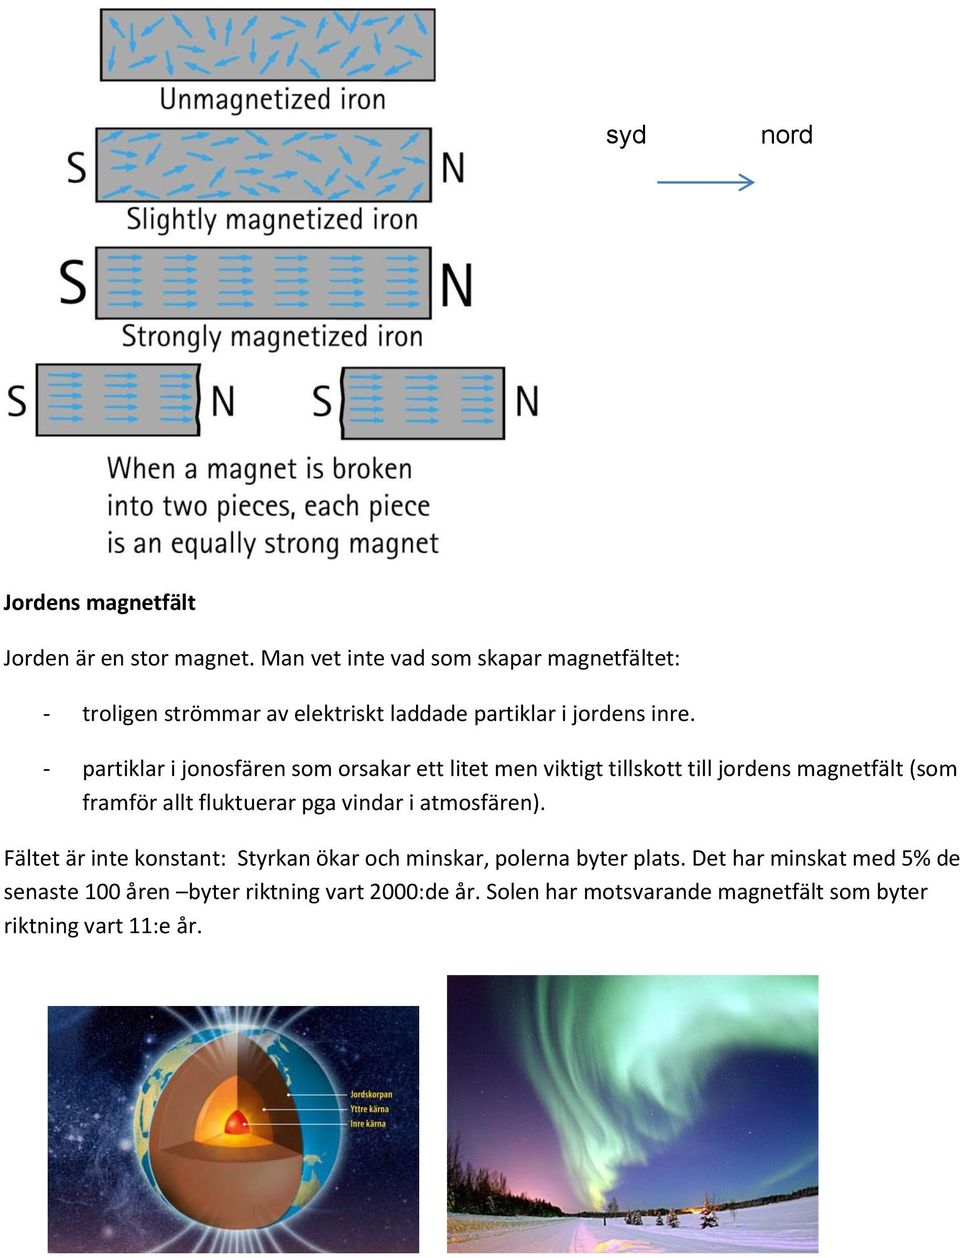 - partiklar i jonosfären som orsakar ett litet men viktigt tillskott till jordens magnetfält (som framför allt fluktuerar pga